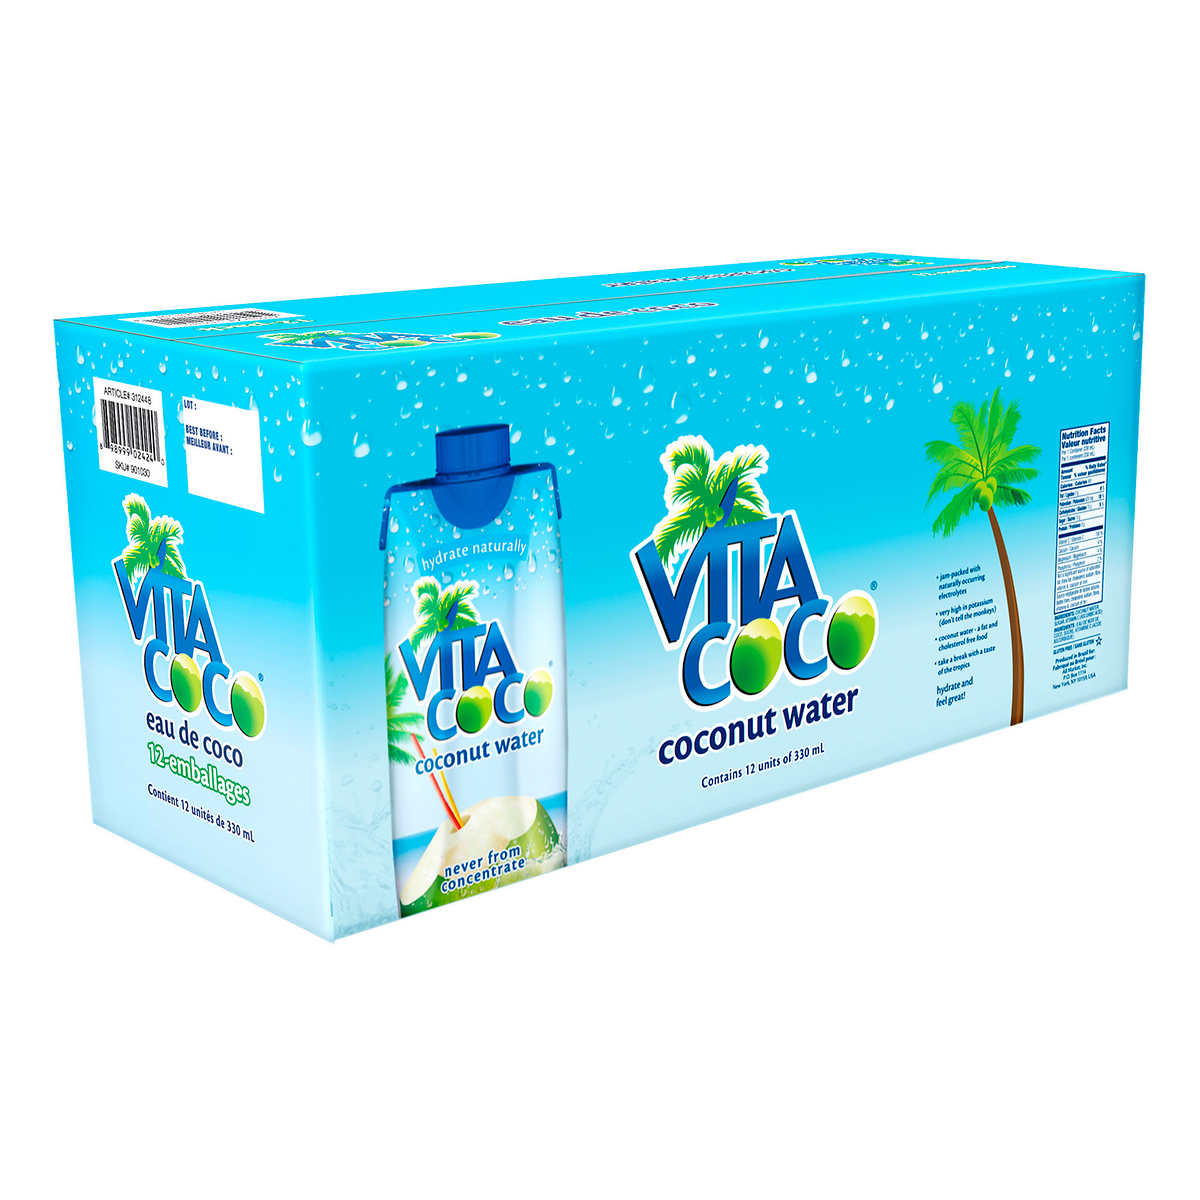 Vita coco - 100% pure eau de coco - Vita Coco